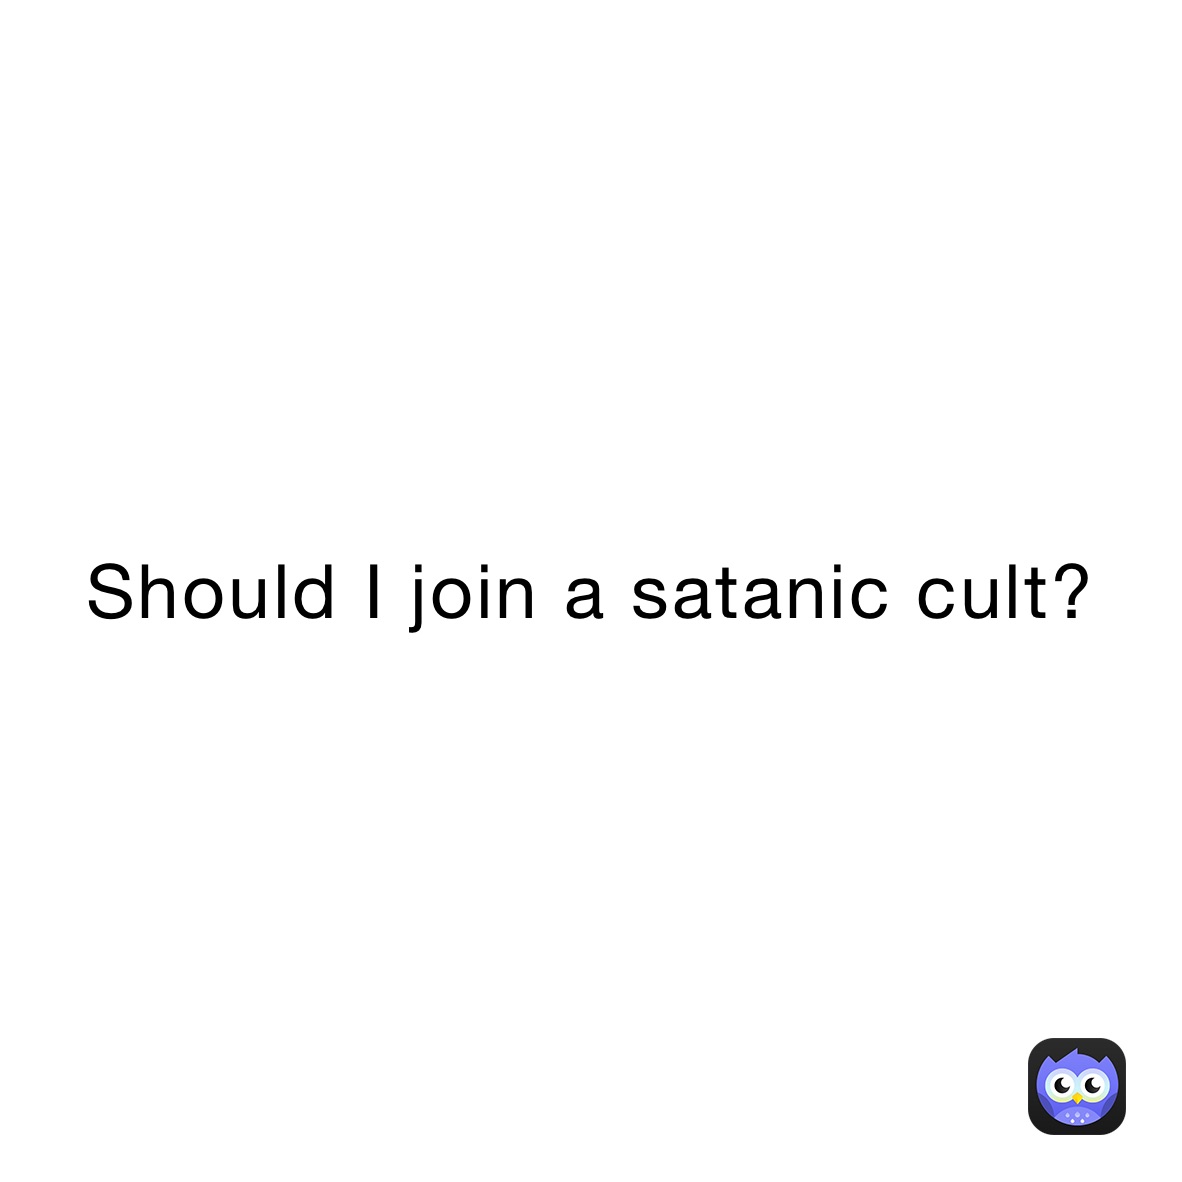 Should I join a satanic cult?